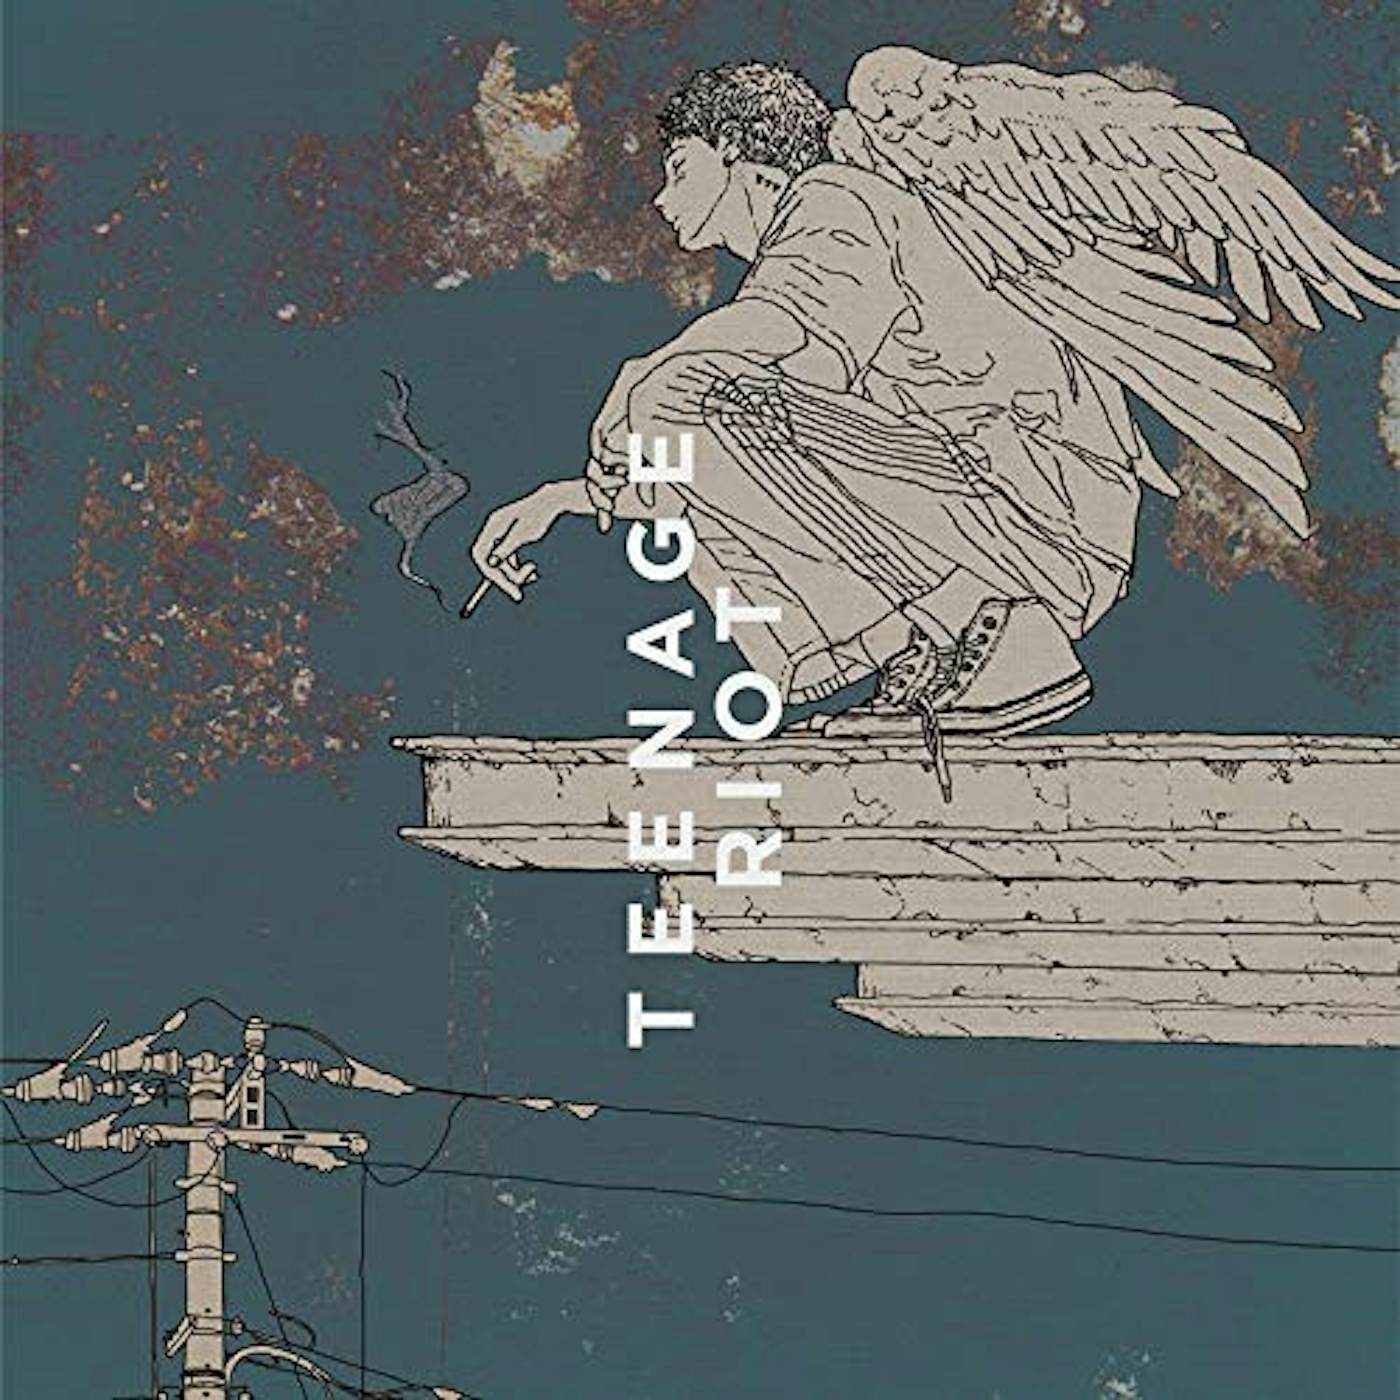 Kenshi Yonezu FLAMINGO / TEENAGE RIOT CD